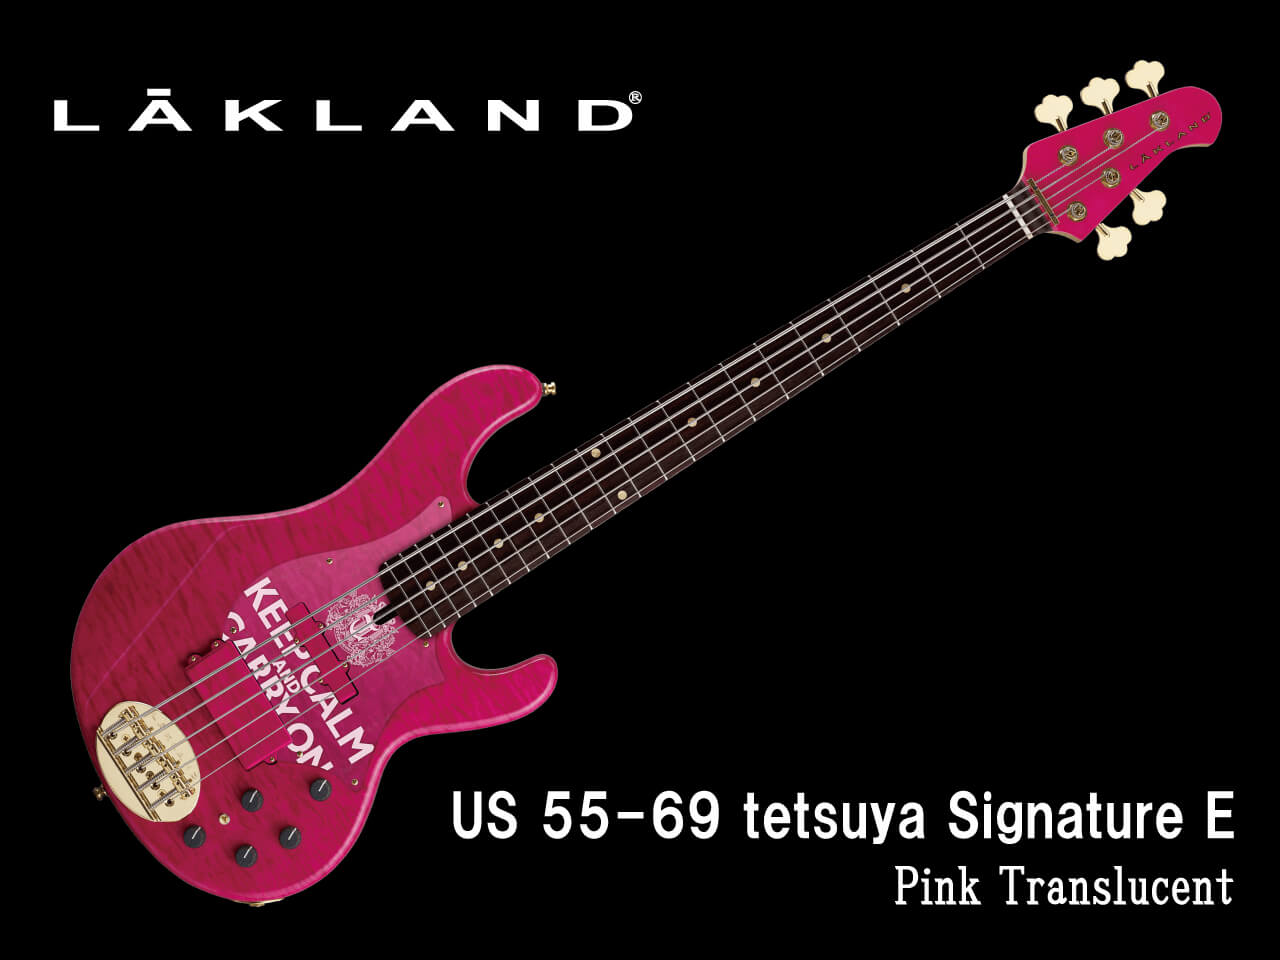 【受注生産】LAKLAND(レイクランド) USA US 55-69 tetsuya Signature E (L’Arc～en～Ciel/tetsuyaモデル)